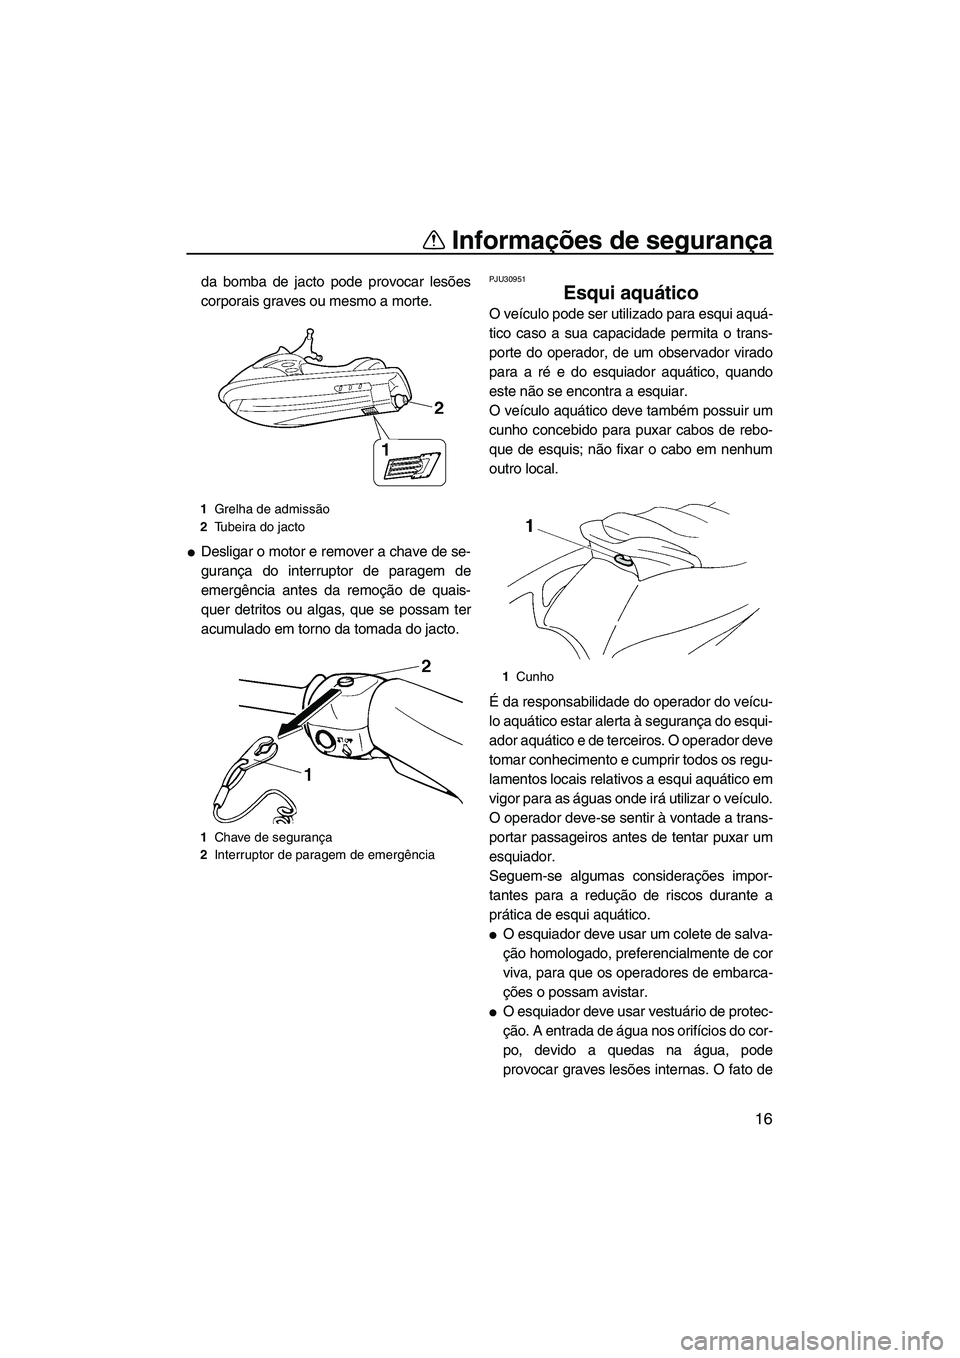 YAMAHA VX 2009  Manual de utilização (in Portuguese) Informações de segurança
16
da bomba de jacto pode provocar lesões
corporais graves ou mesmo a morte.
Desligar o motor e remover a chave de se-
gurança do interruptor de paragem de
emergência a